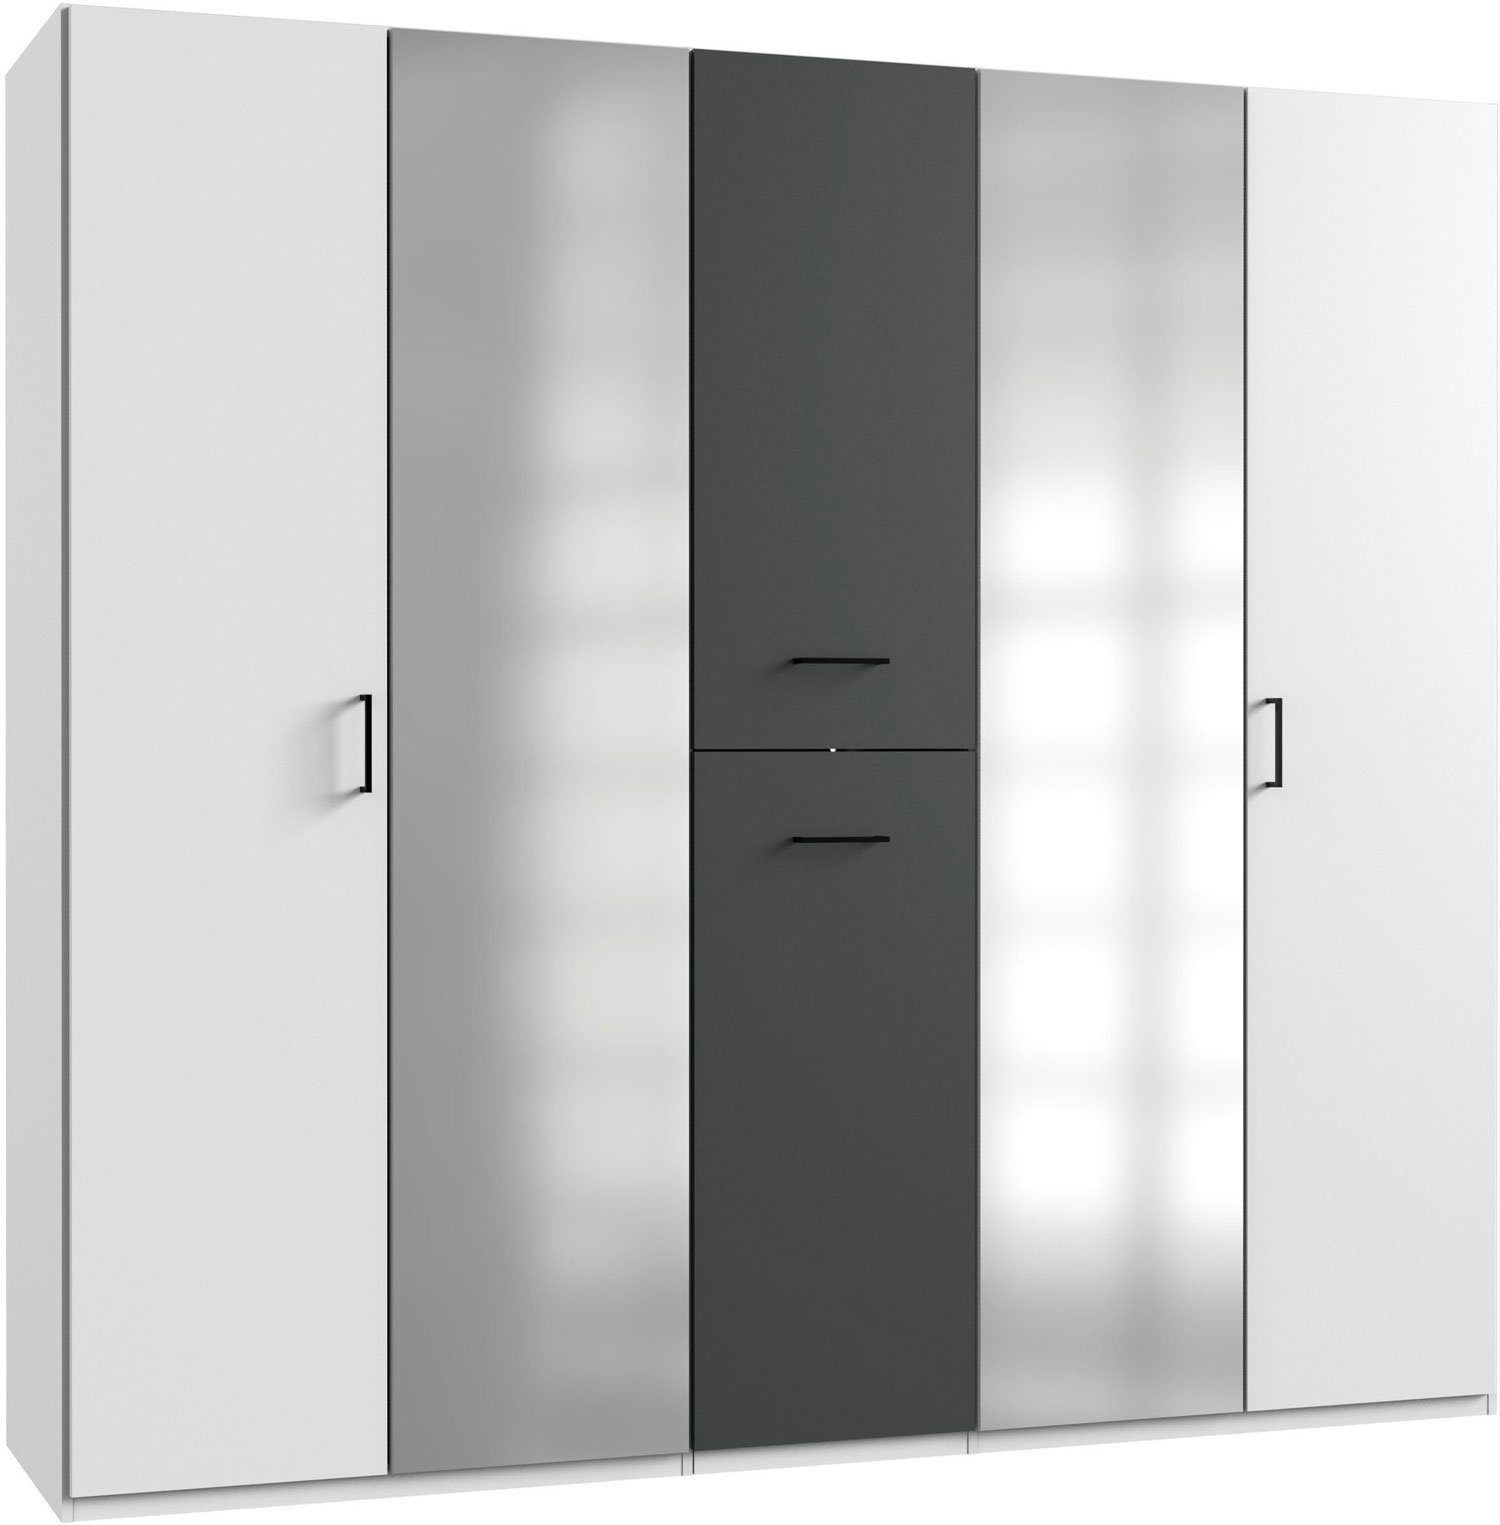 Wimex Kleiderschrank Lima 225x58x208cm weiß graphit 2-türig mit Spiegel und Apothekerauszügen